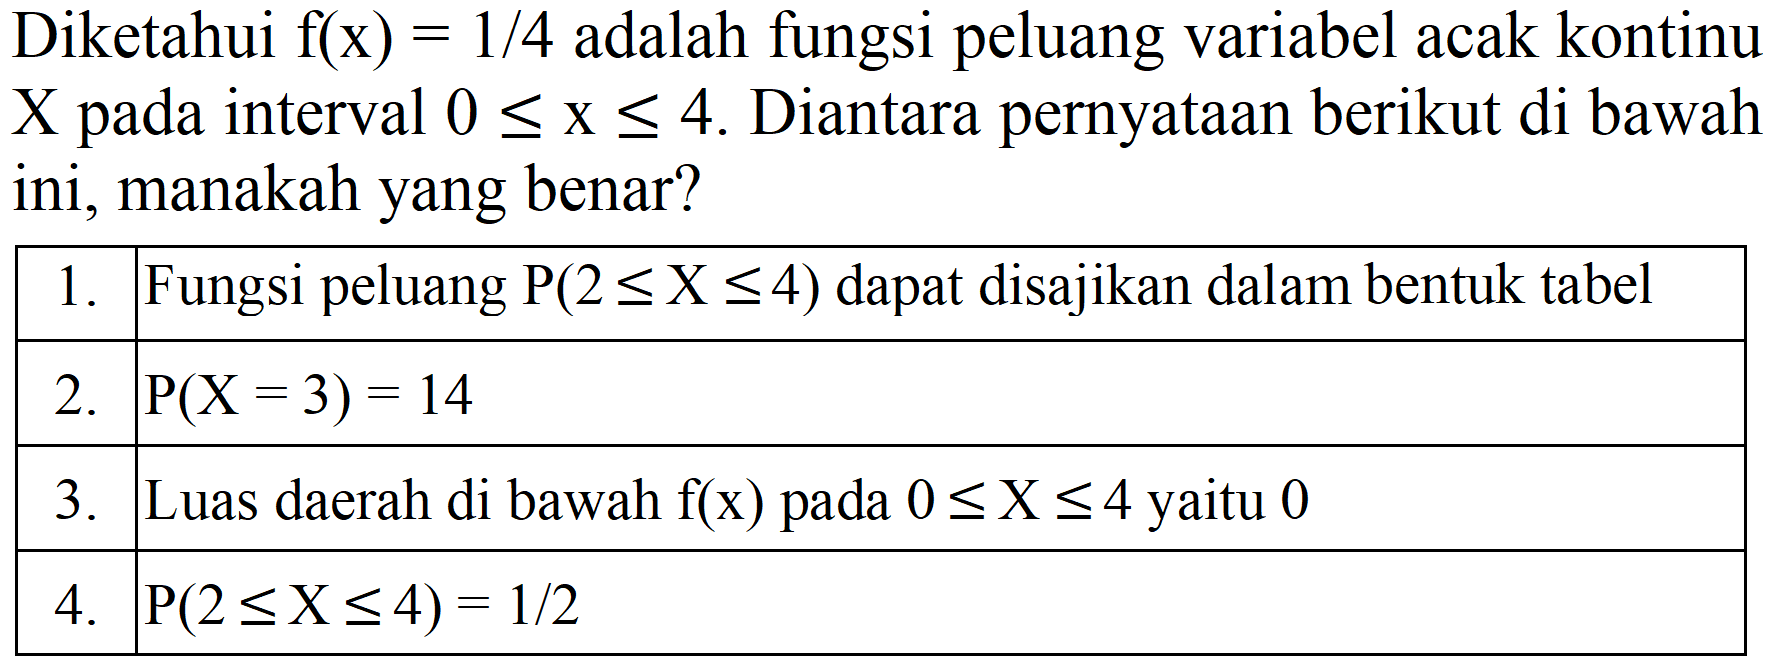 Diketahui f(x) = 1/4 adalah fungsi peluang variabel acak kontinu X pada interval 0 <= x <= 4. Diantara pernyataan berikut di bawah ini, manakah yang benar?

 1.  Fungsi peluang P(2 <= X <= 4) dapat disajikan dalam bentuk tabel 
 2.   P(X = 3) = 14  
 3.  Luas daerah di bawah f(x) pada 0 <= X <= 4 yaitu 0 
 4.   P(2 <= X <= 4) = 1/2  

